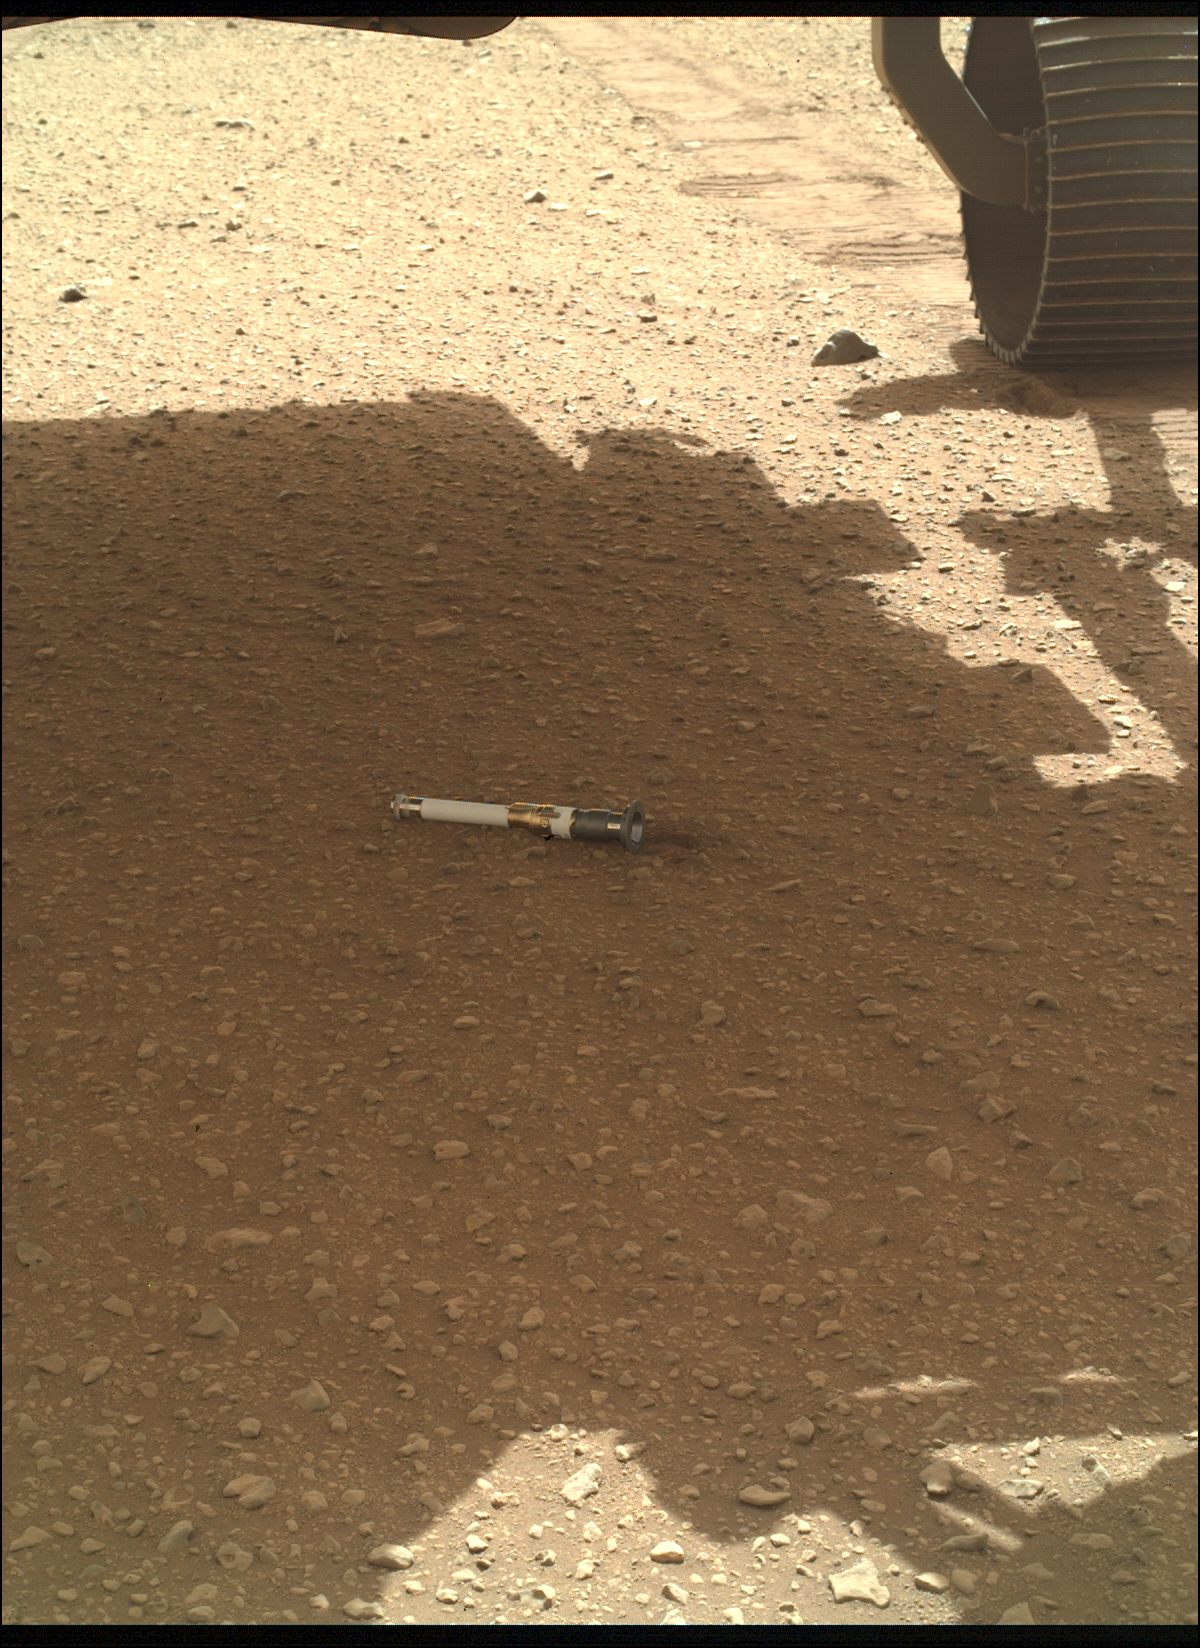 Marsov pesek s cevjo na vrhu.  vidna so samo kolesa roverja